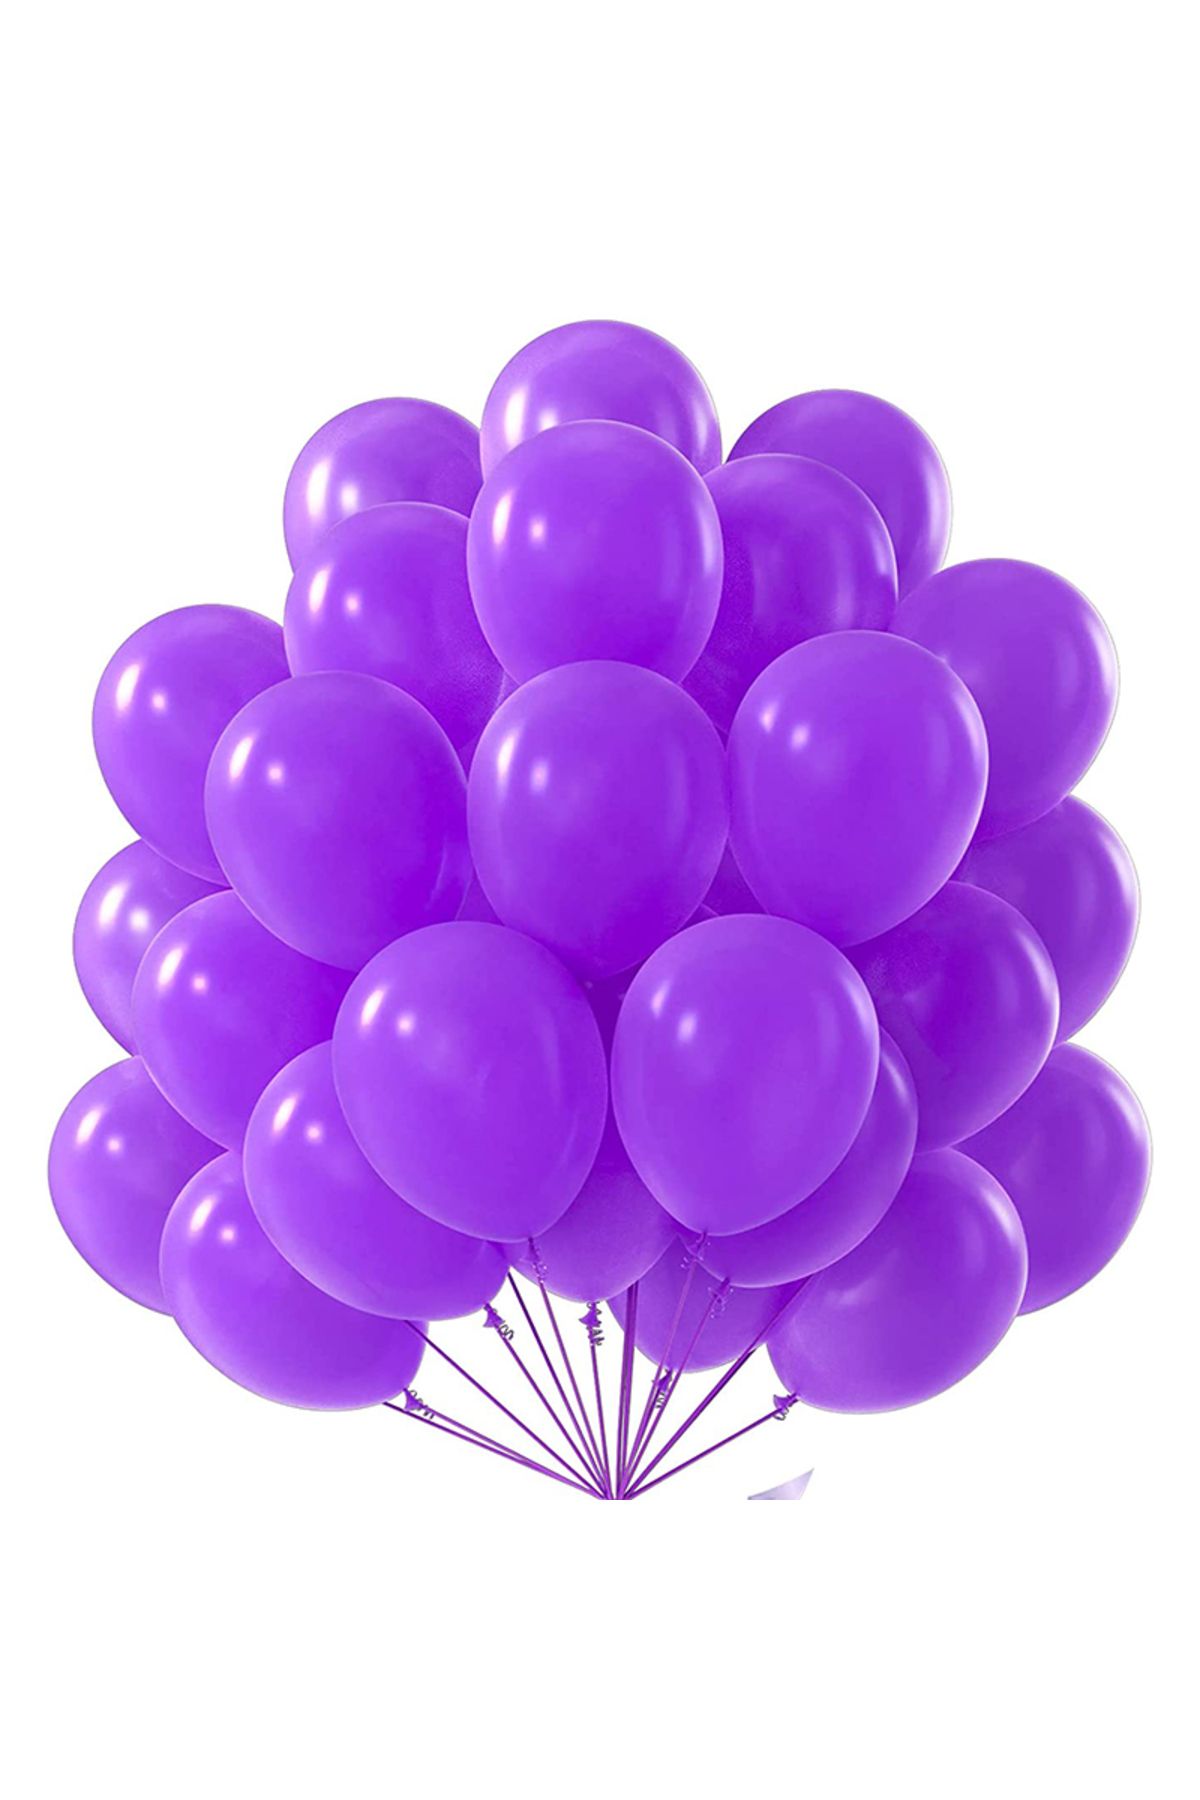 pazariz Lateks Balon Parti Organizasyon Balonu 14/A düğün doğum günü dekorasyon 10 Adet